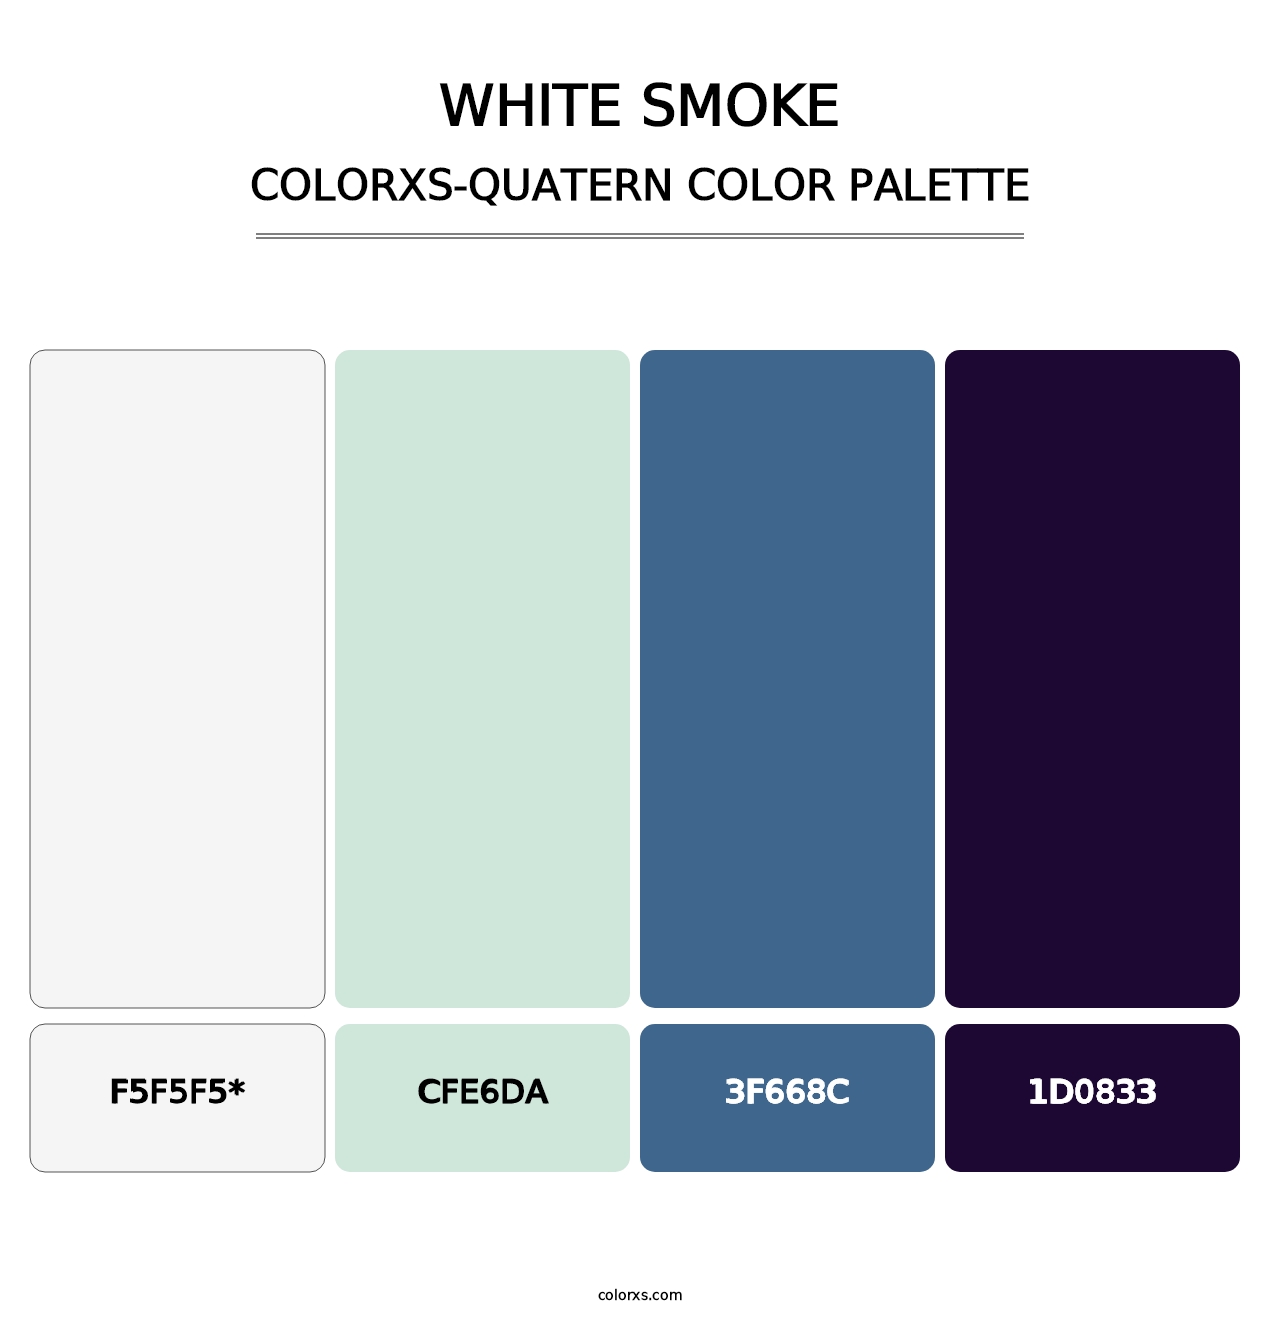 White Smoke - Colorxs Quatern Palette